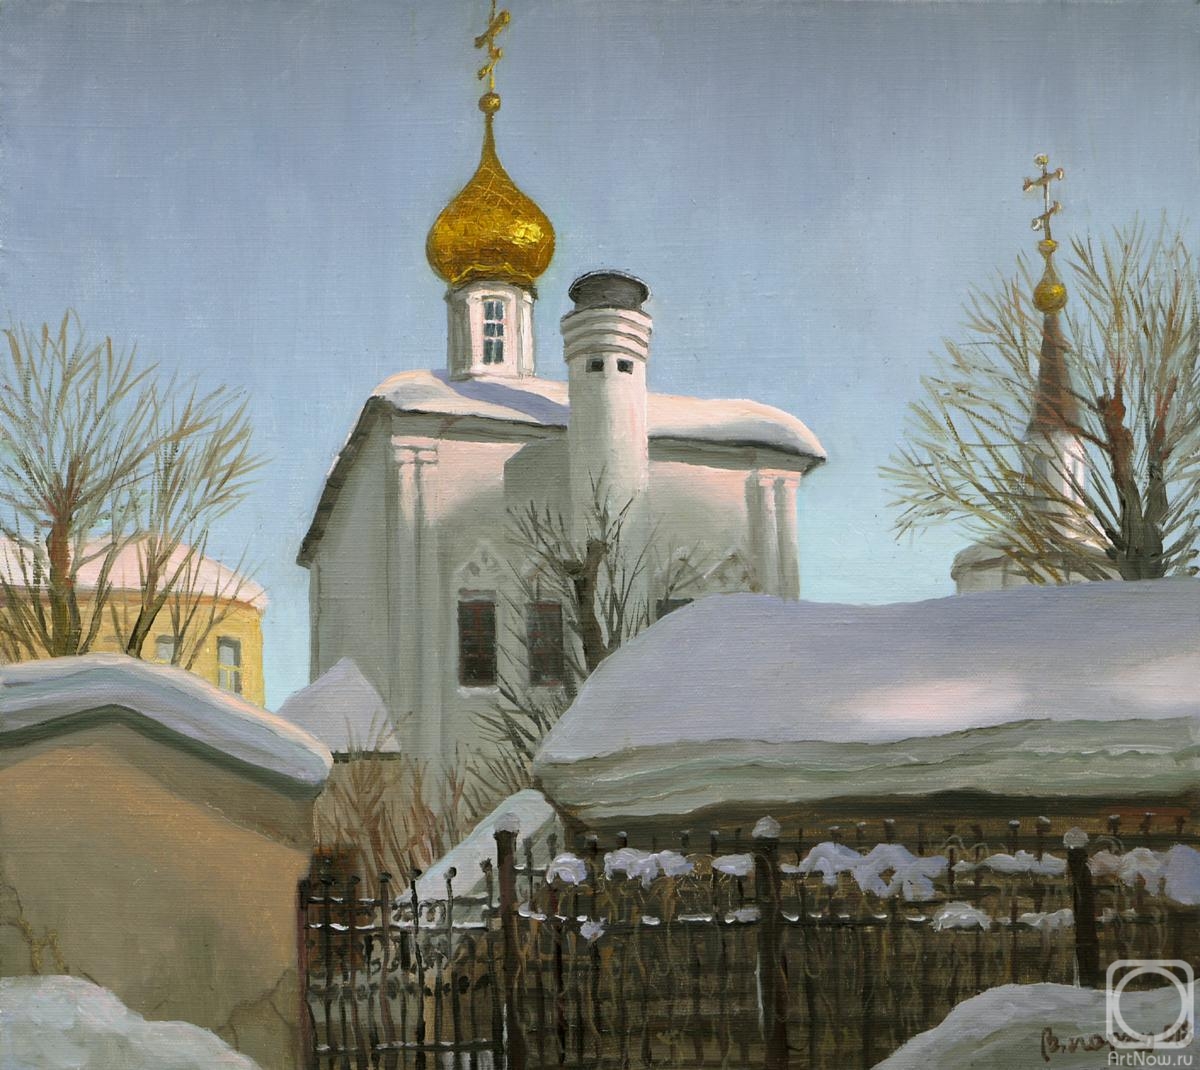 Paroshin Vladimir. The Dormition Church in Pechatniki